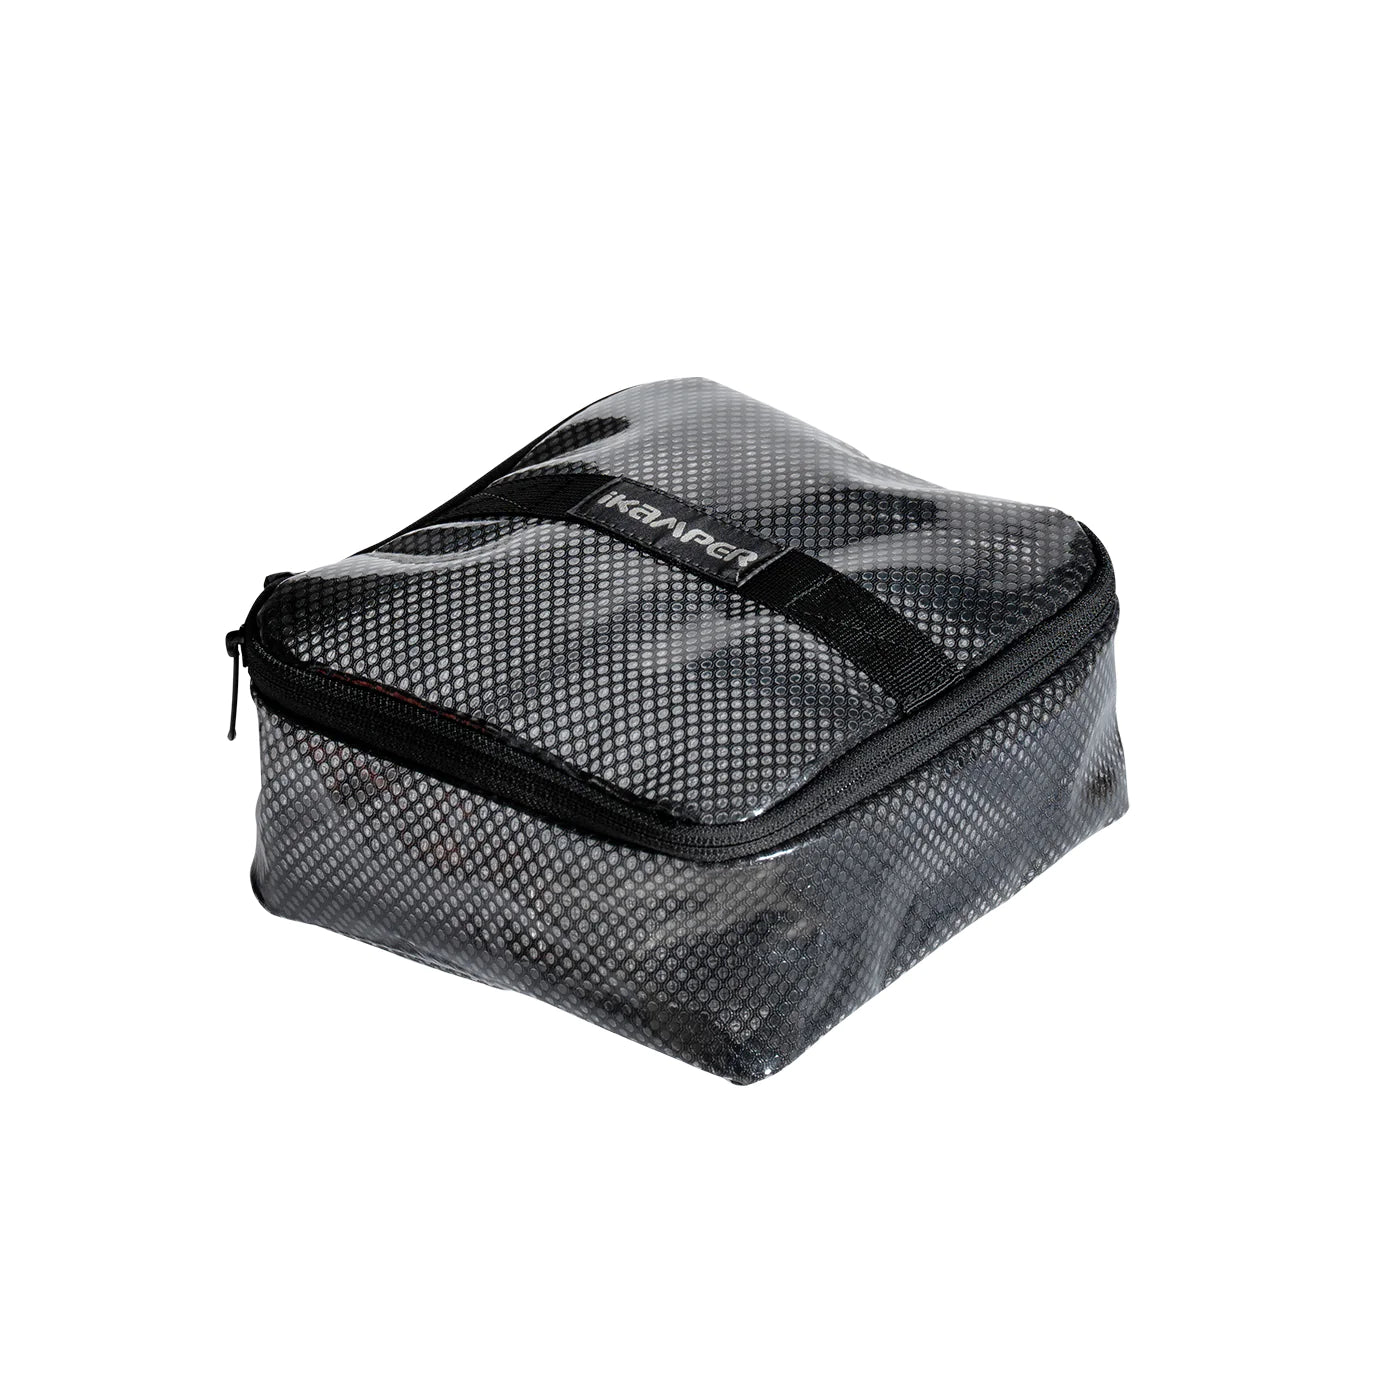 iKamper Waterproof Packing Cube